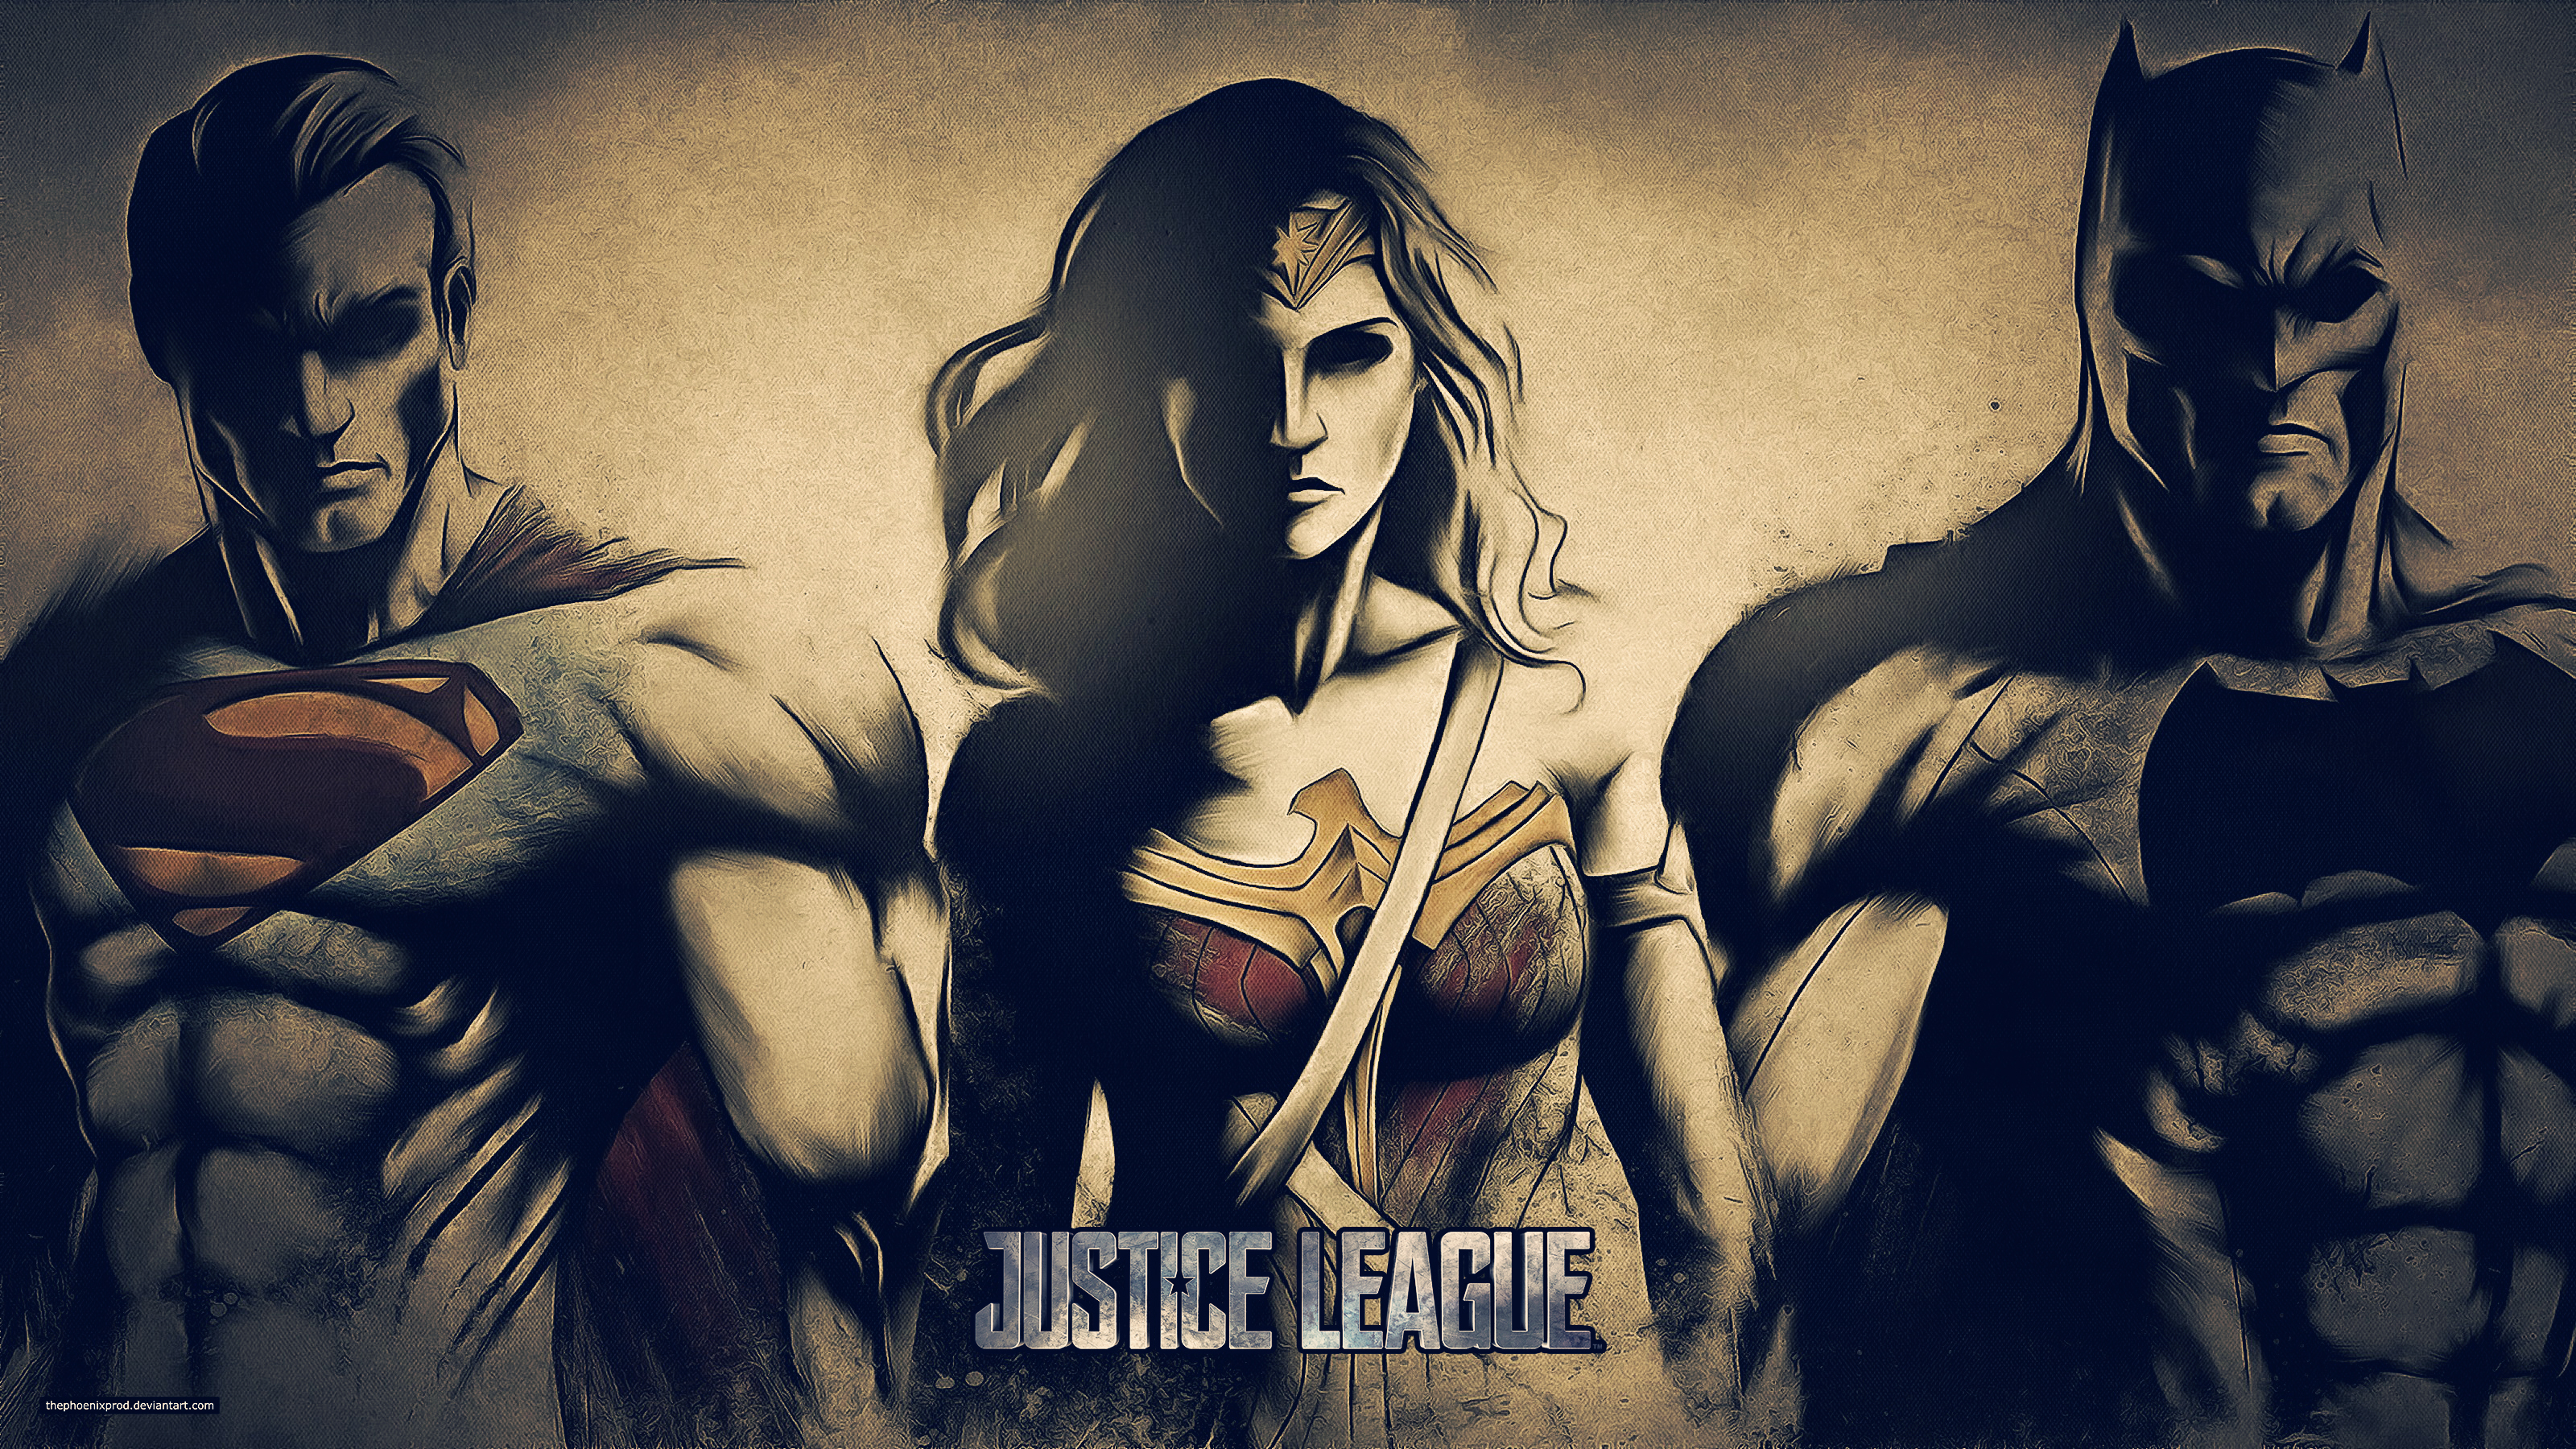 Justice League (Wallpaper 4k) by thephoenixprod on DeviantArt